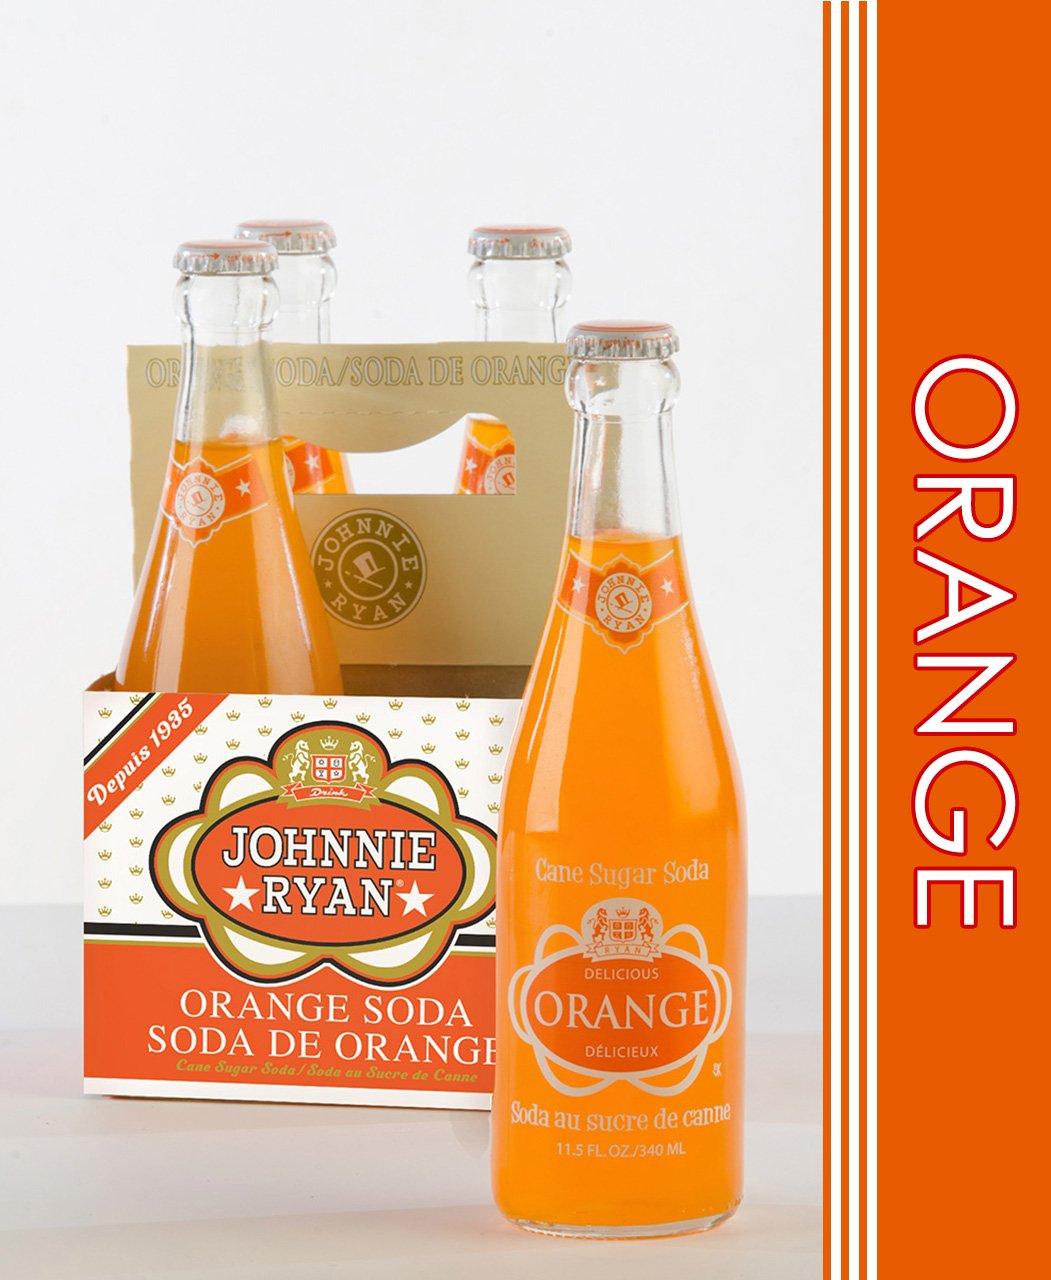 Orange cane sugar soda from Johnnie Ryan beverages in Niagara Falls, NY.